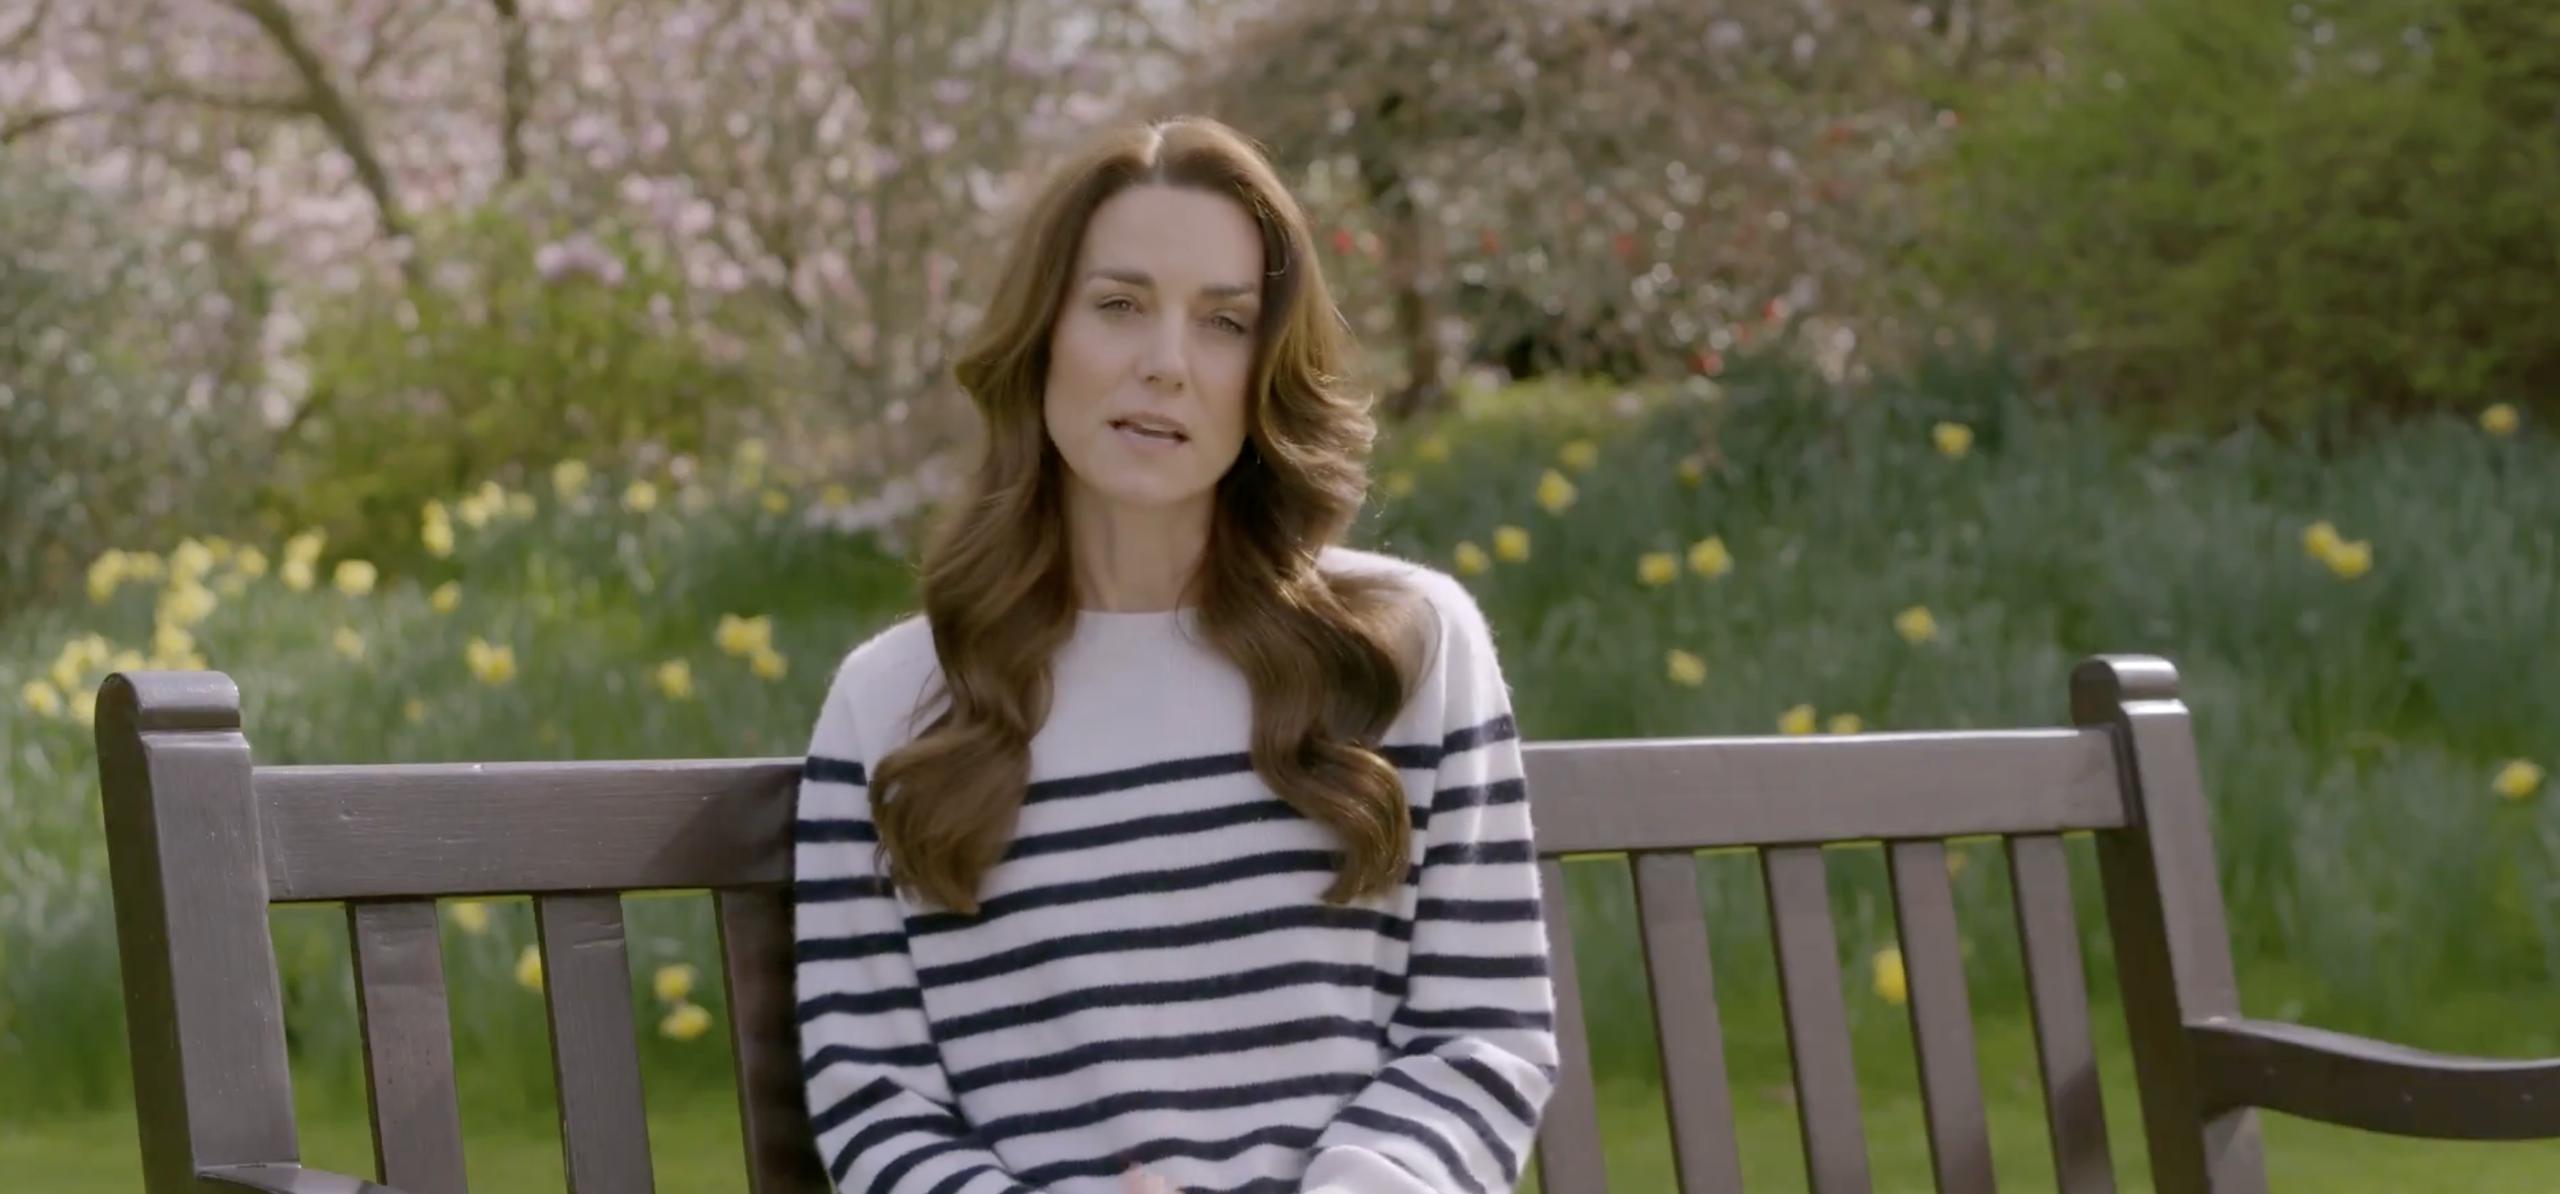 Captura del vídeo en el que la princesa de Gales, Kate Middleton, revela que tiene cáncer.